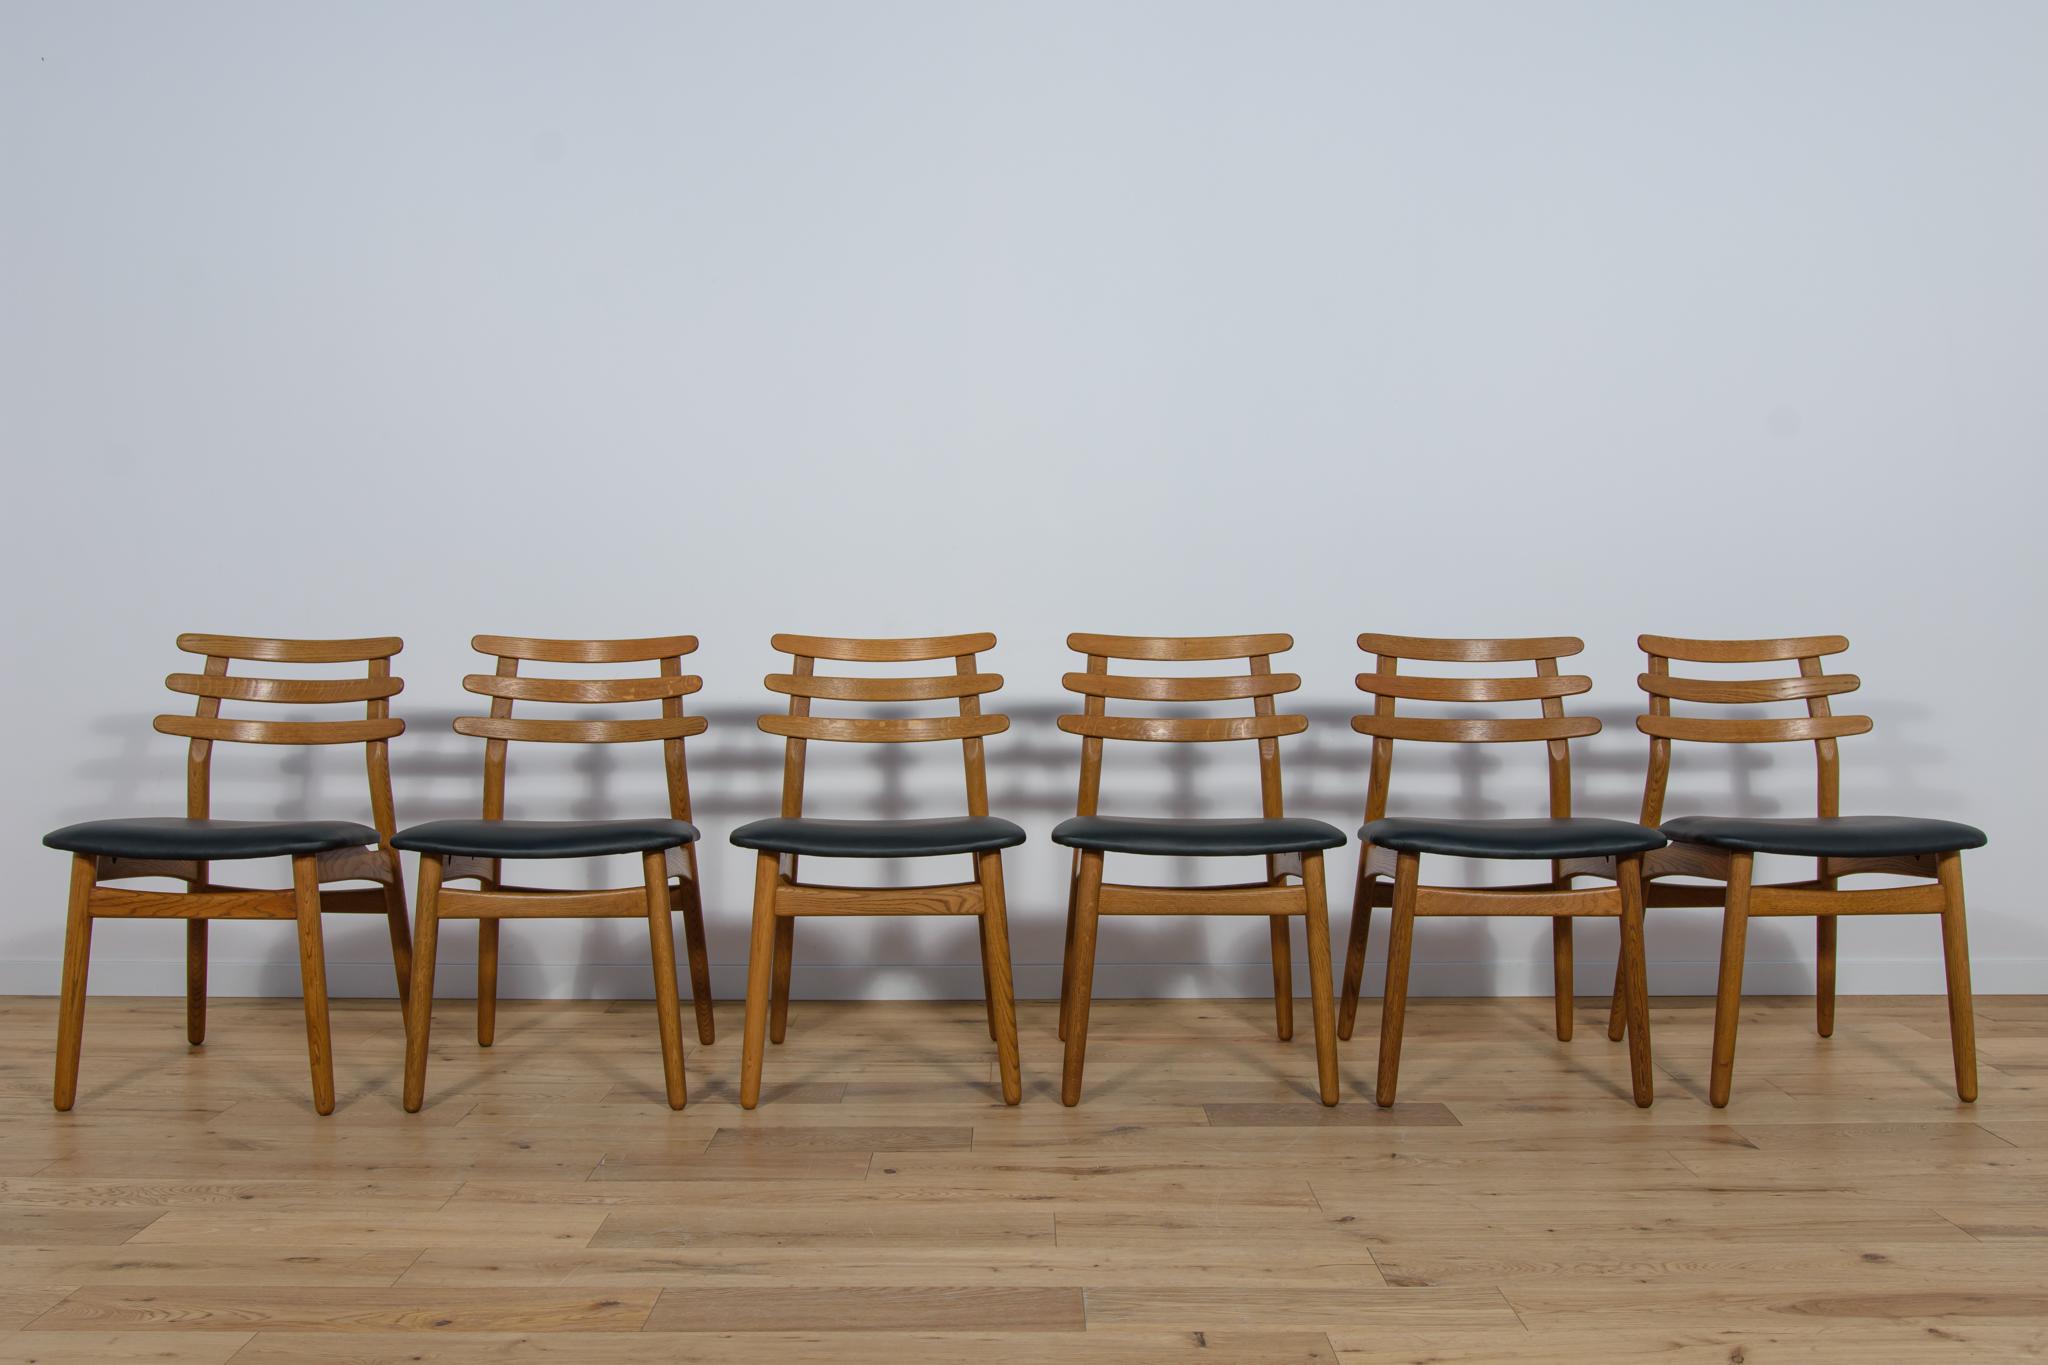 Ein Satz von vier Stühlen, entworfen von Poul Volther für die dänische Fabrik FDB Mobler in den 1960er Jahren. Die Stühle wurden professionell geschreinert und gepolstert. Stuhlrahmen aus Eichenholz wurden von der alten Oberfläche gereinigt und mit